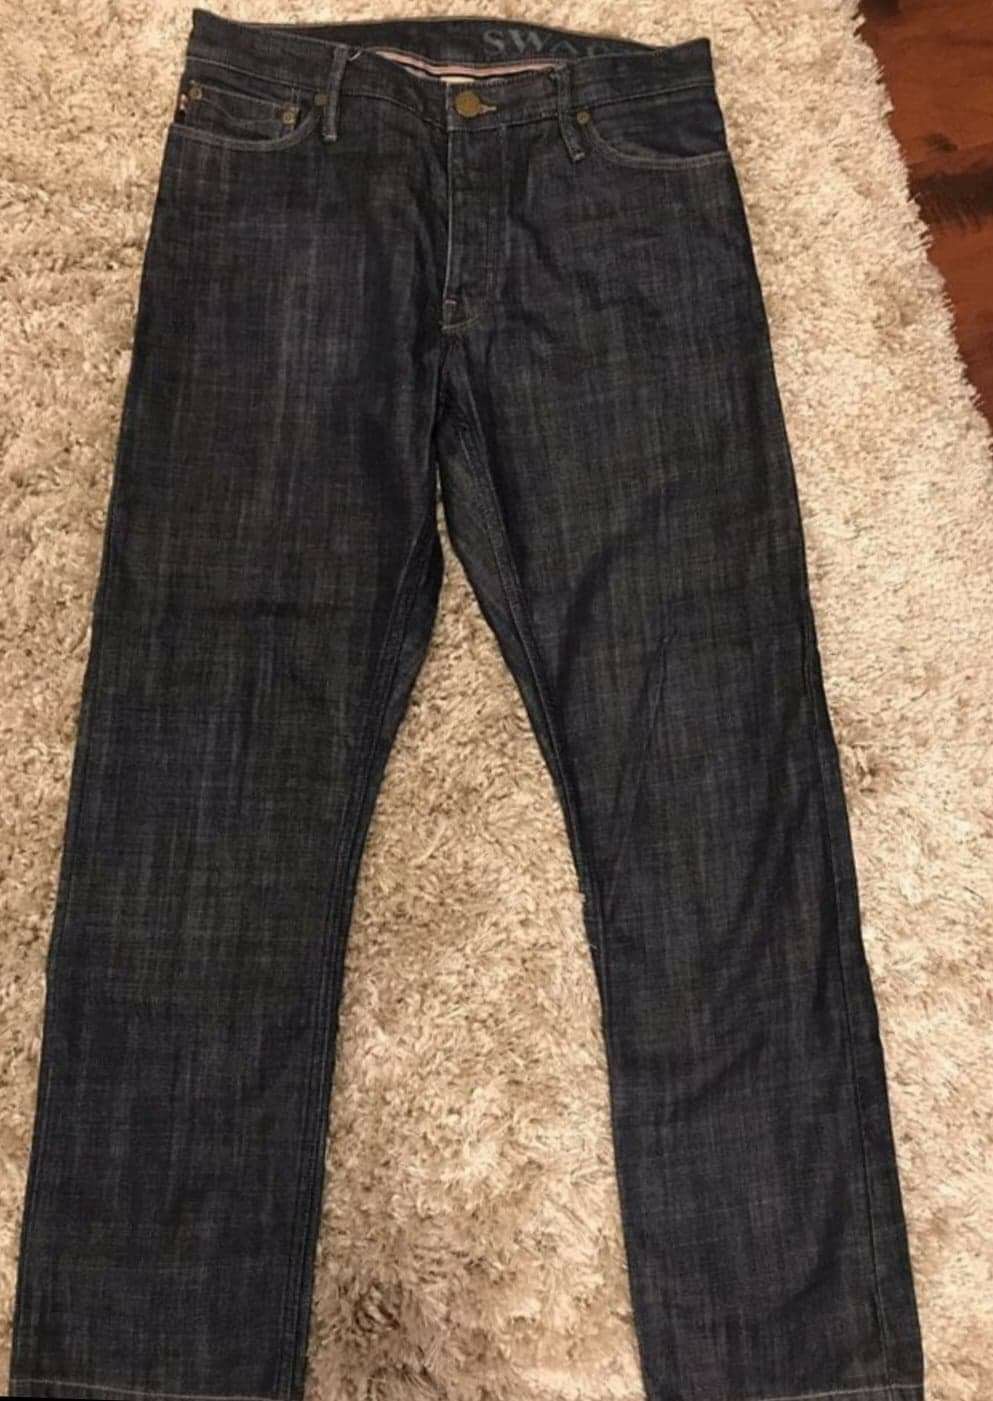 Burberry Men’s Jeans. Straight leg.Authentic bueberry 32x30L